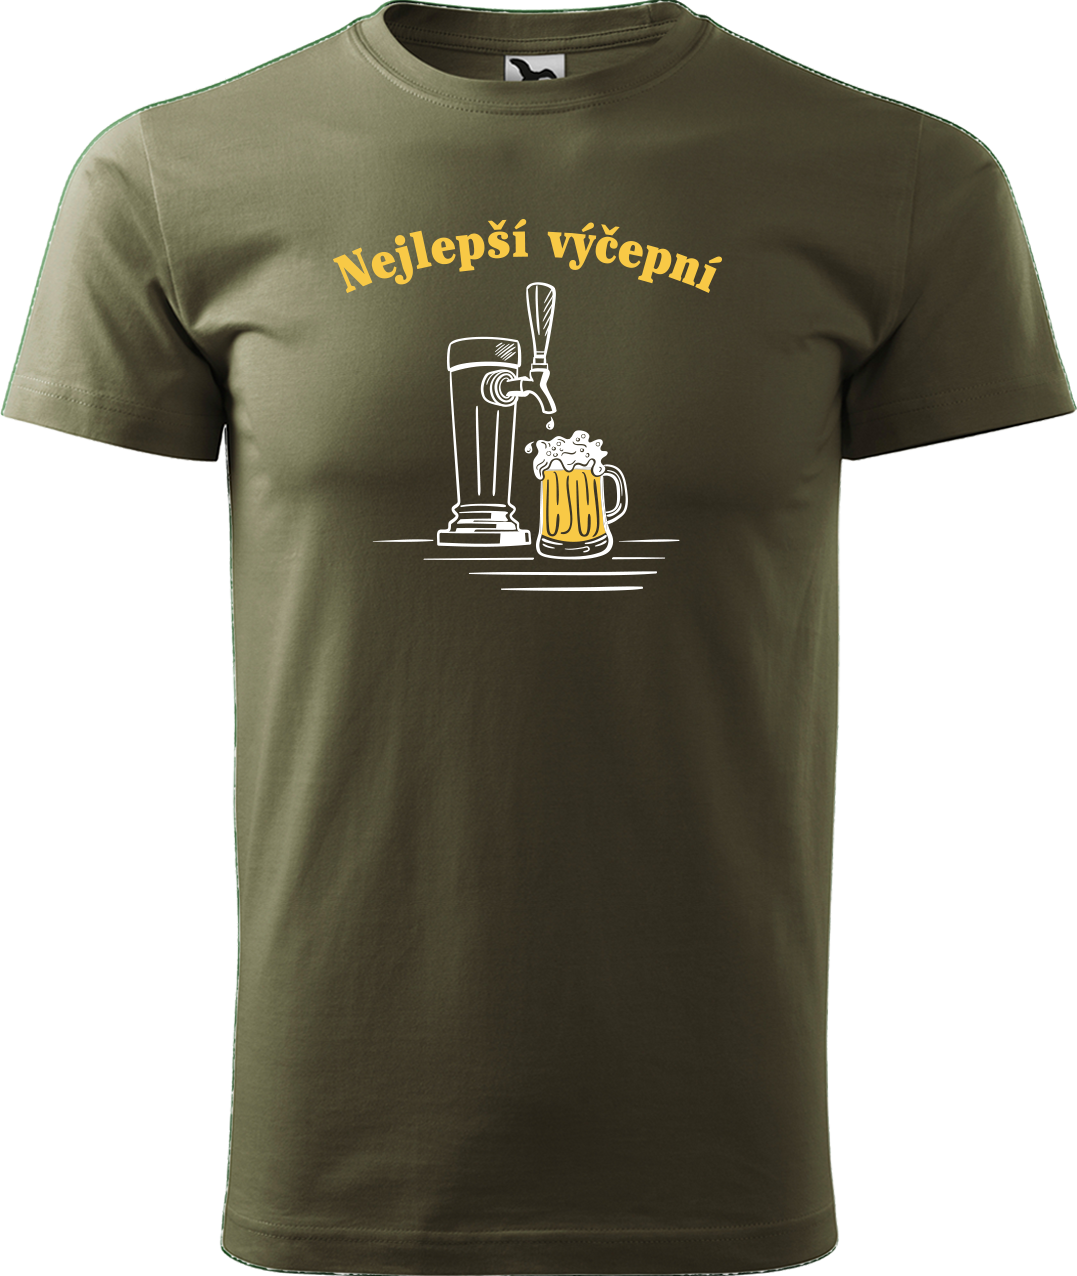 Pivní tričko - Nejlepší hospodskej Velikost: L, Barva: Military (69)